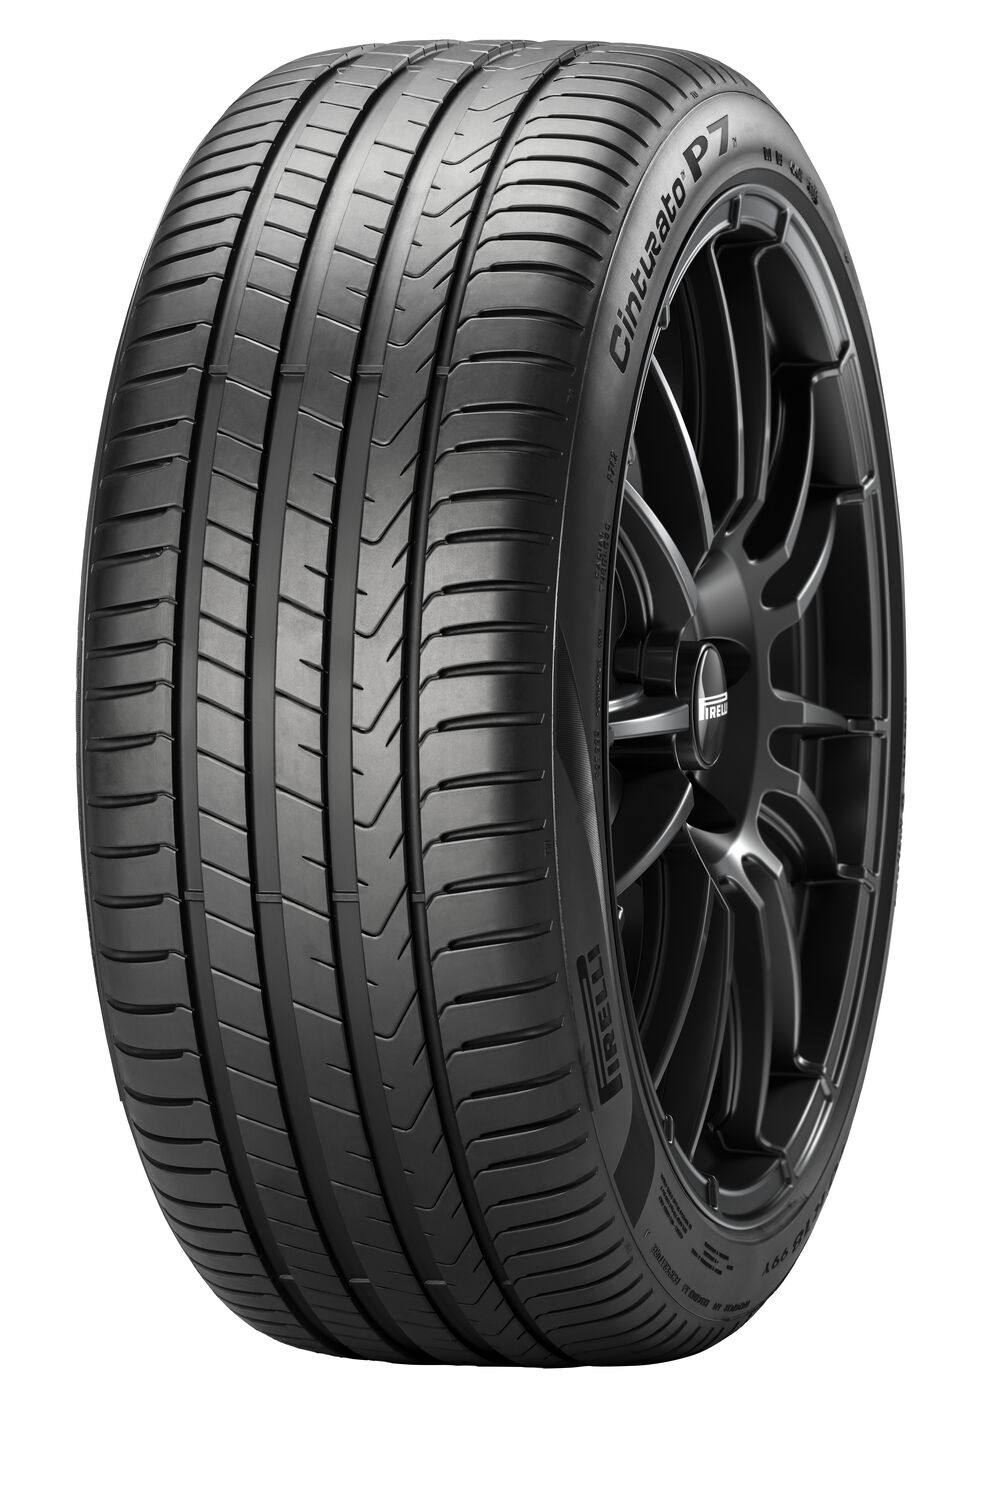 Gomme Nuove Pirelli 205/55 R17 91V P7C2 pneumatici nuovi Estivo